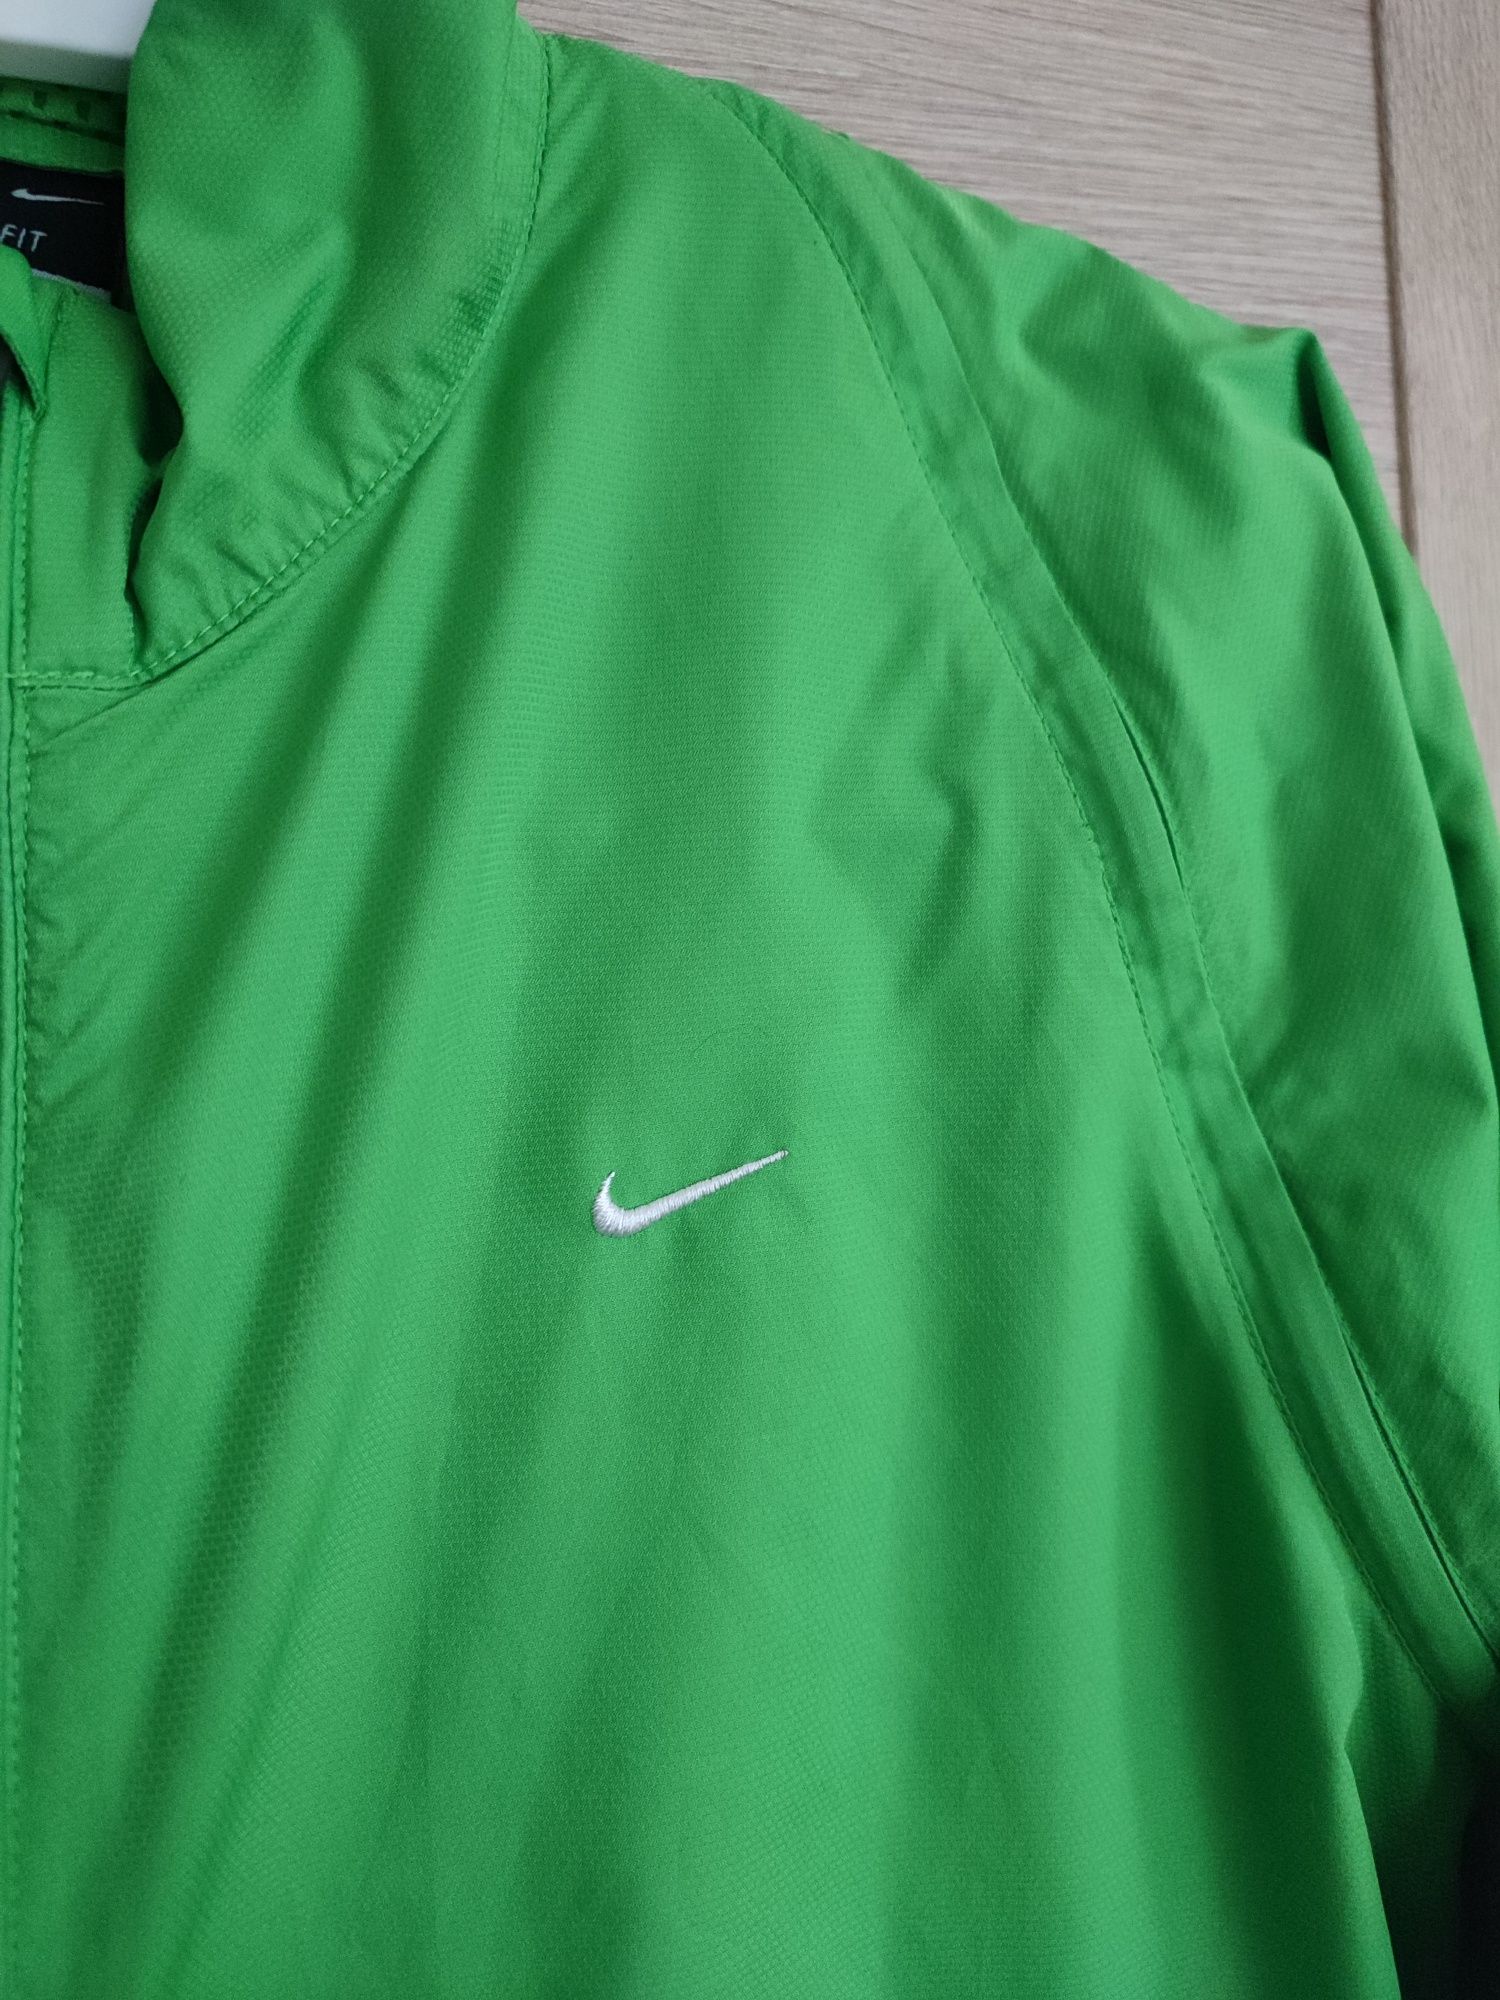 Zielona kurtka damska Nike Clima Fit rozm. M
Rozm. M
Odpinane rękawy